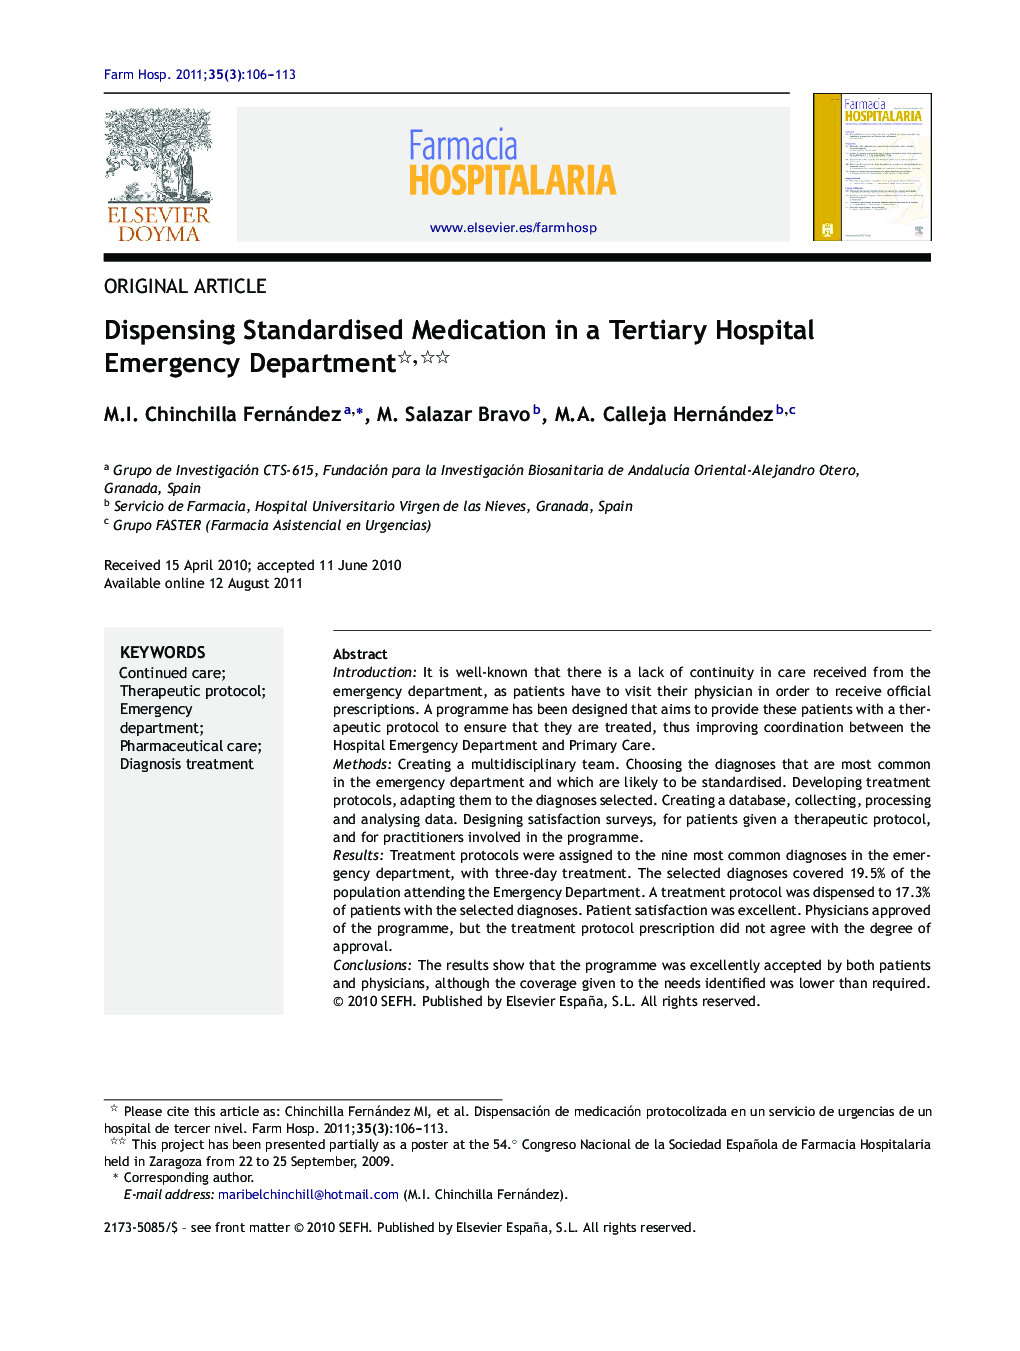 Dispensing Standardised Medication in a Tertiary Hospital Emergency Department